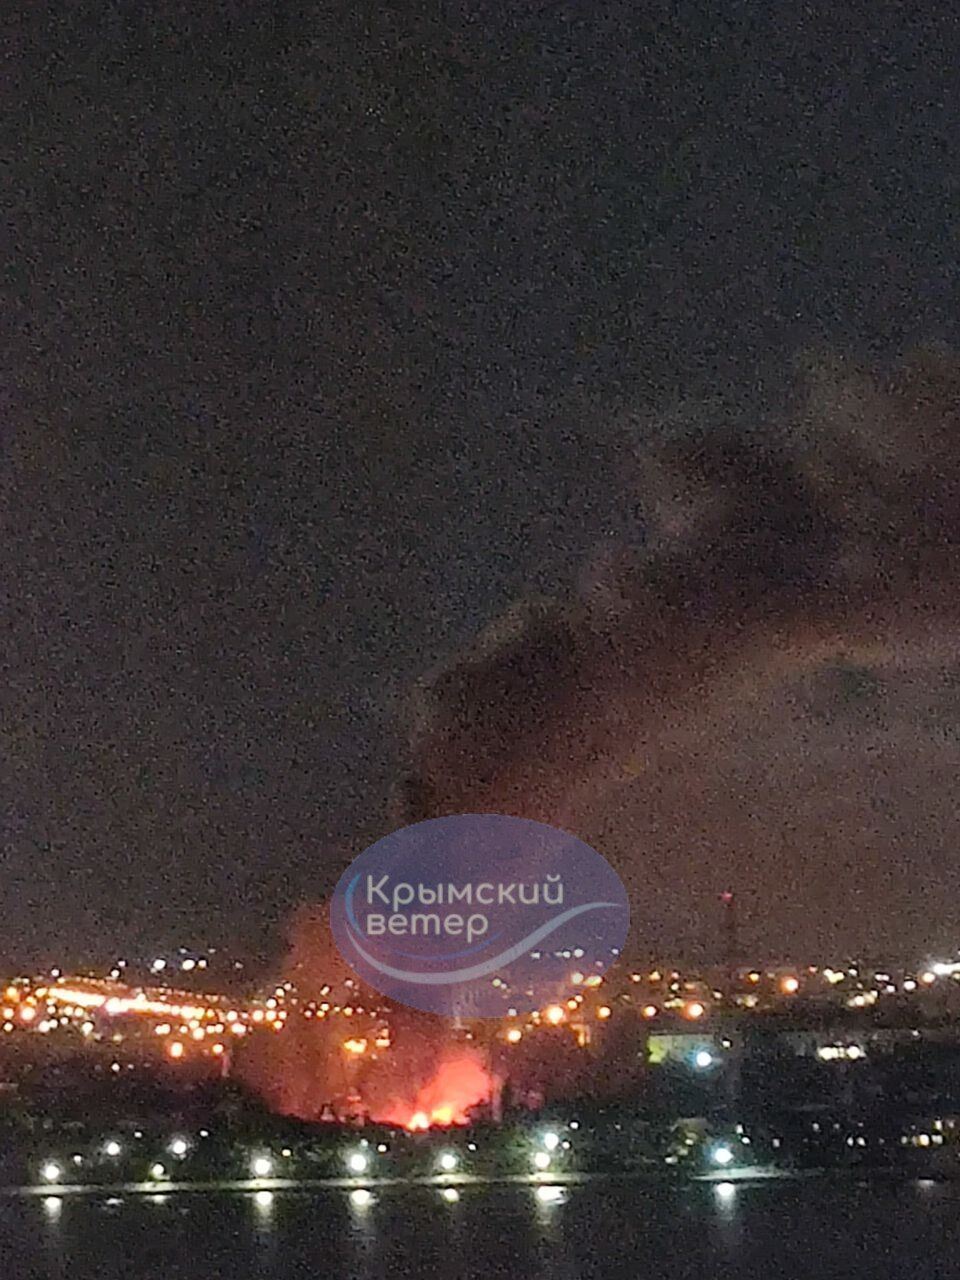 В Севастополе на судоремонтном заводе раздались мощные взрывы: повреждены корабли РФ. Фото, видео и все подробности